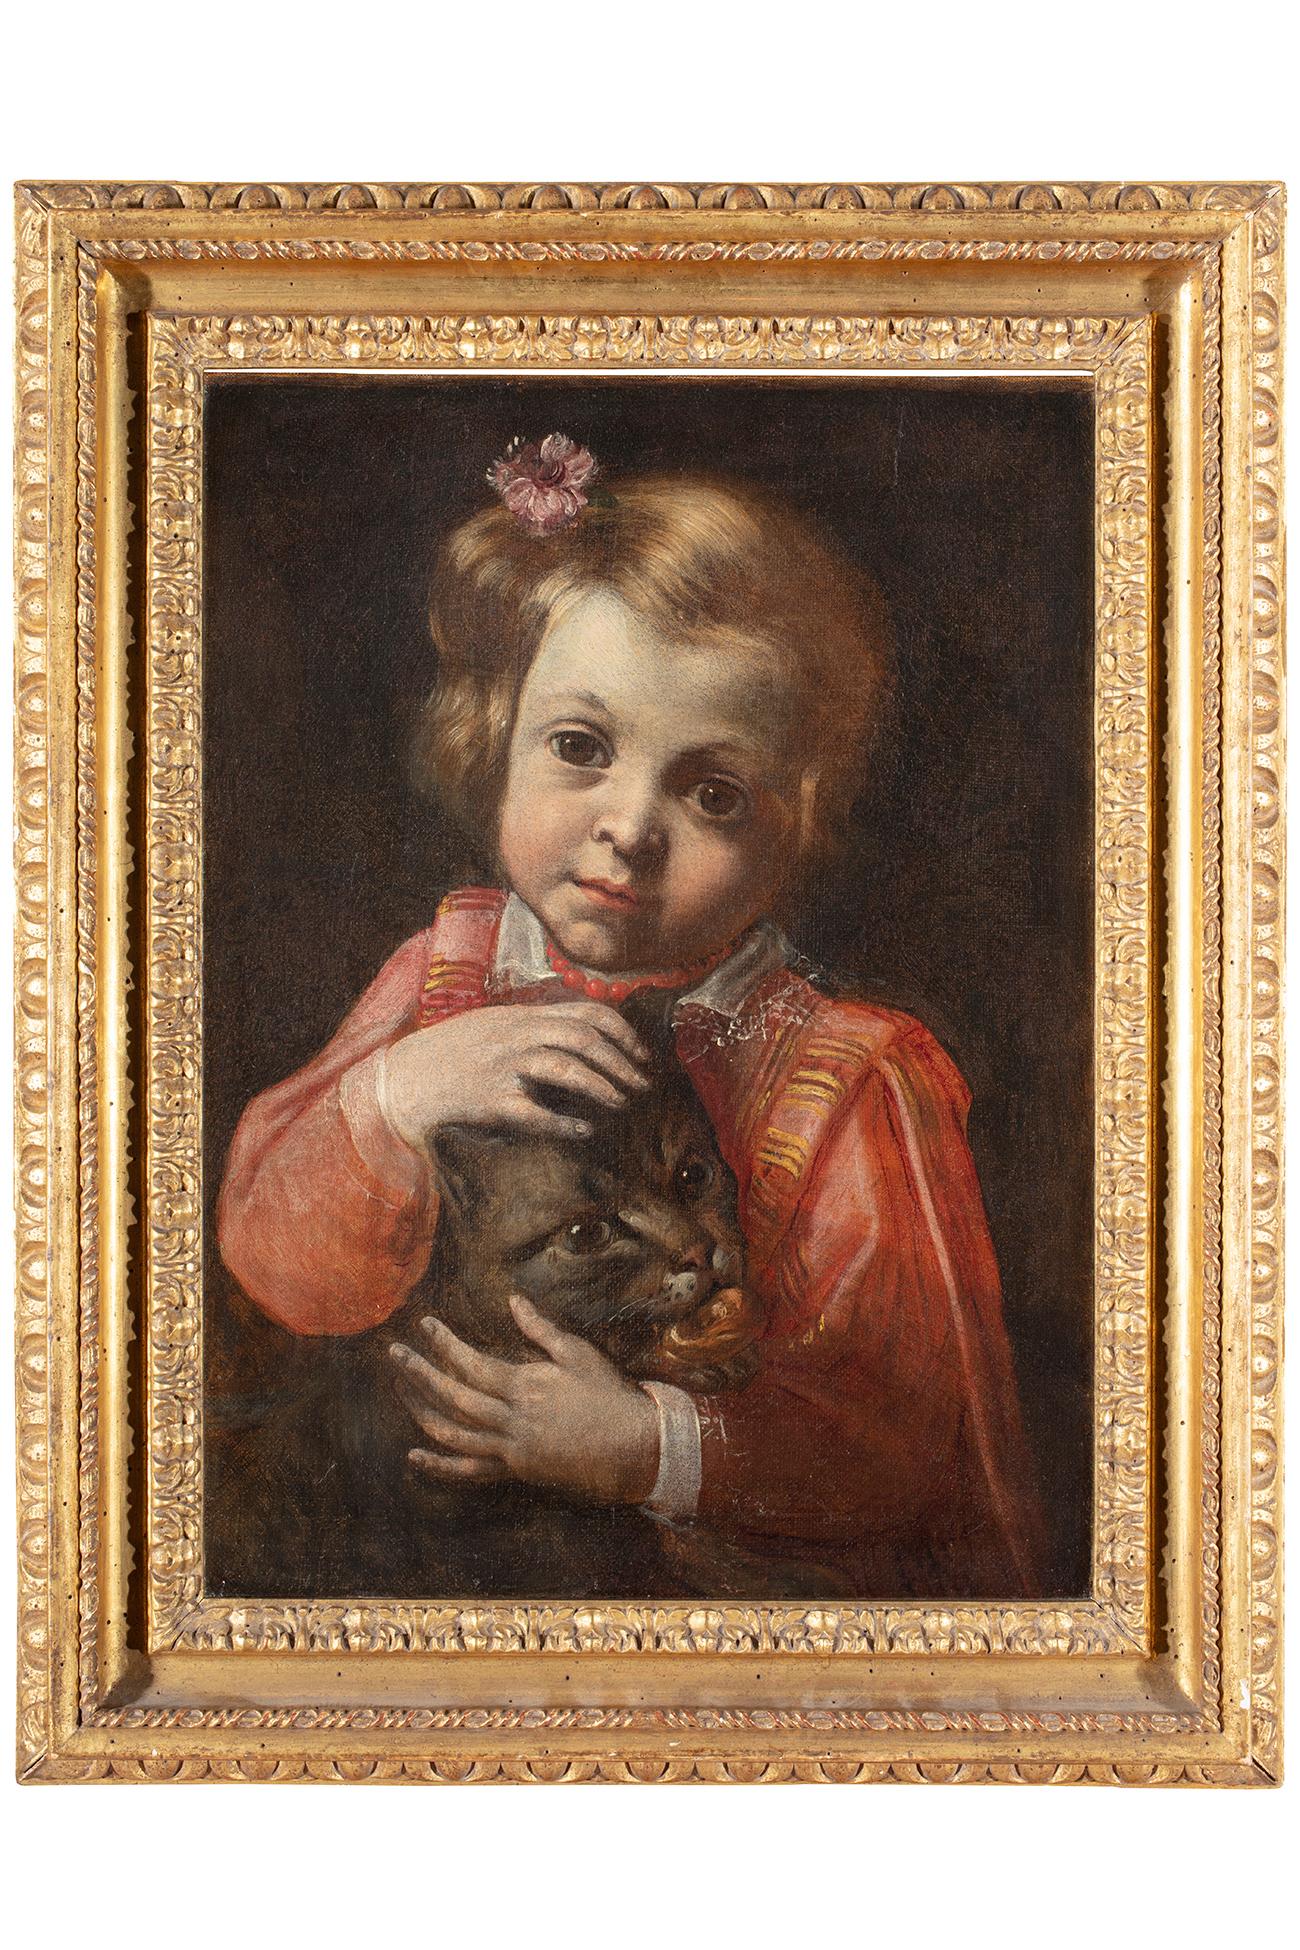 Antonio Mercurio Amorosi (Comunanza 1660 - 1738)
Portrait d'une petite fille avec un chat
Huile sur toile, cm. 42 x 31,5 - avec cadre cm. 56 x 44
Cadre de cassette en bois façonné, sculpté et doré

Expertise : Giancarlo Sestieri


Il y a un esprit